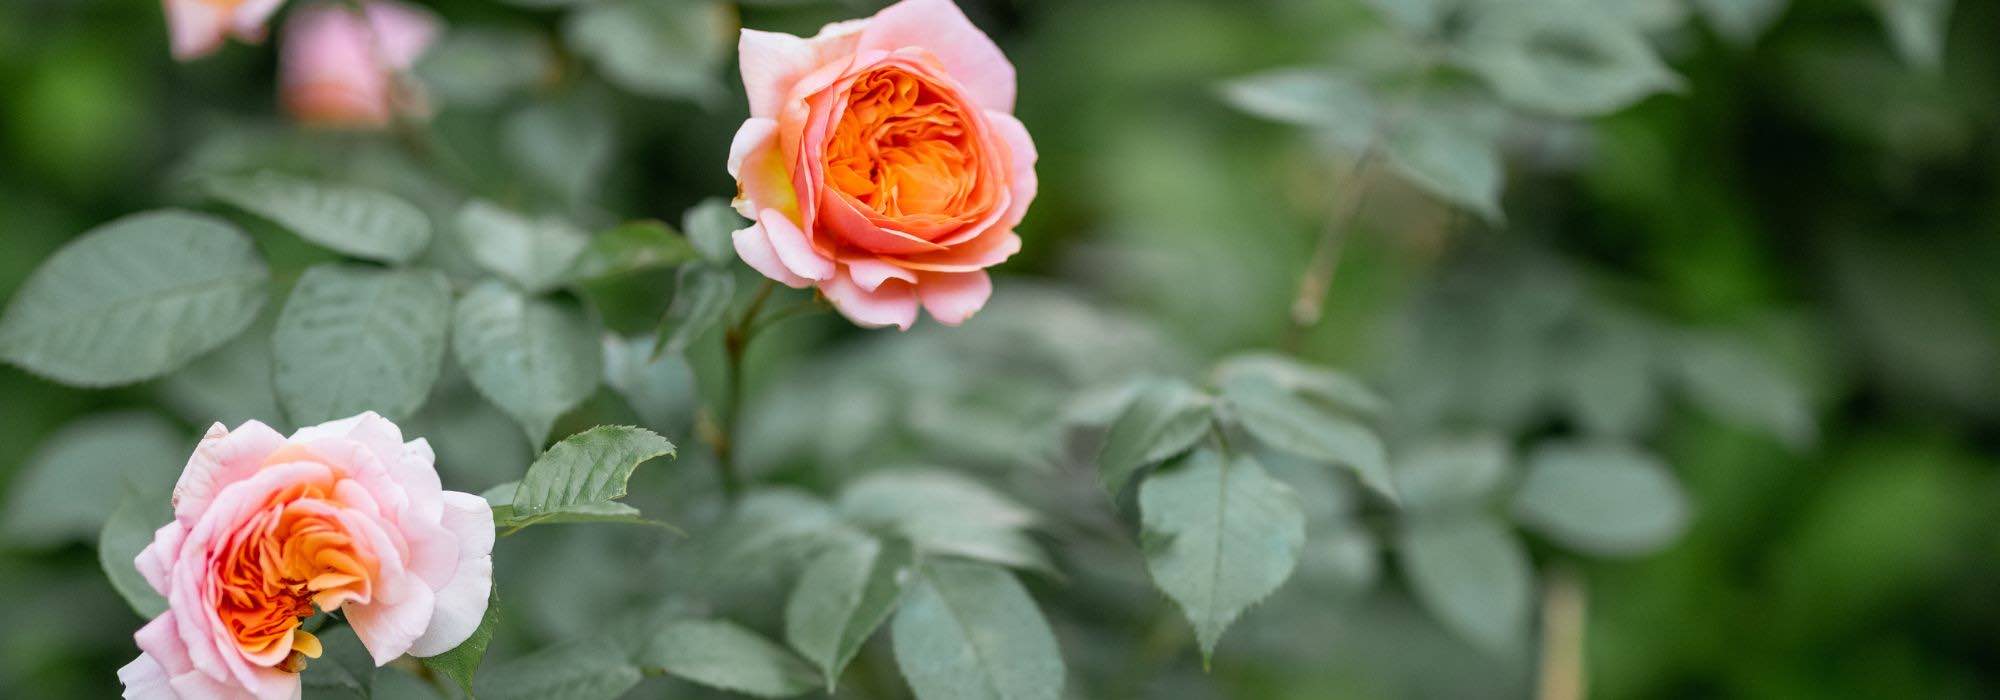 Comment cultiver un rosier en pot ? - Promesse de Fleurs